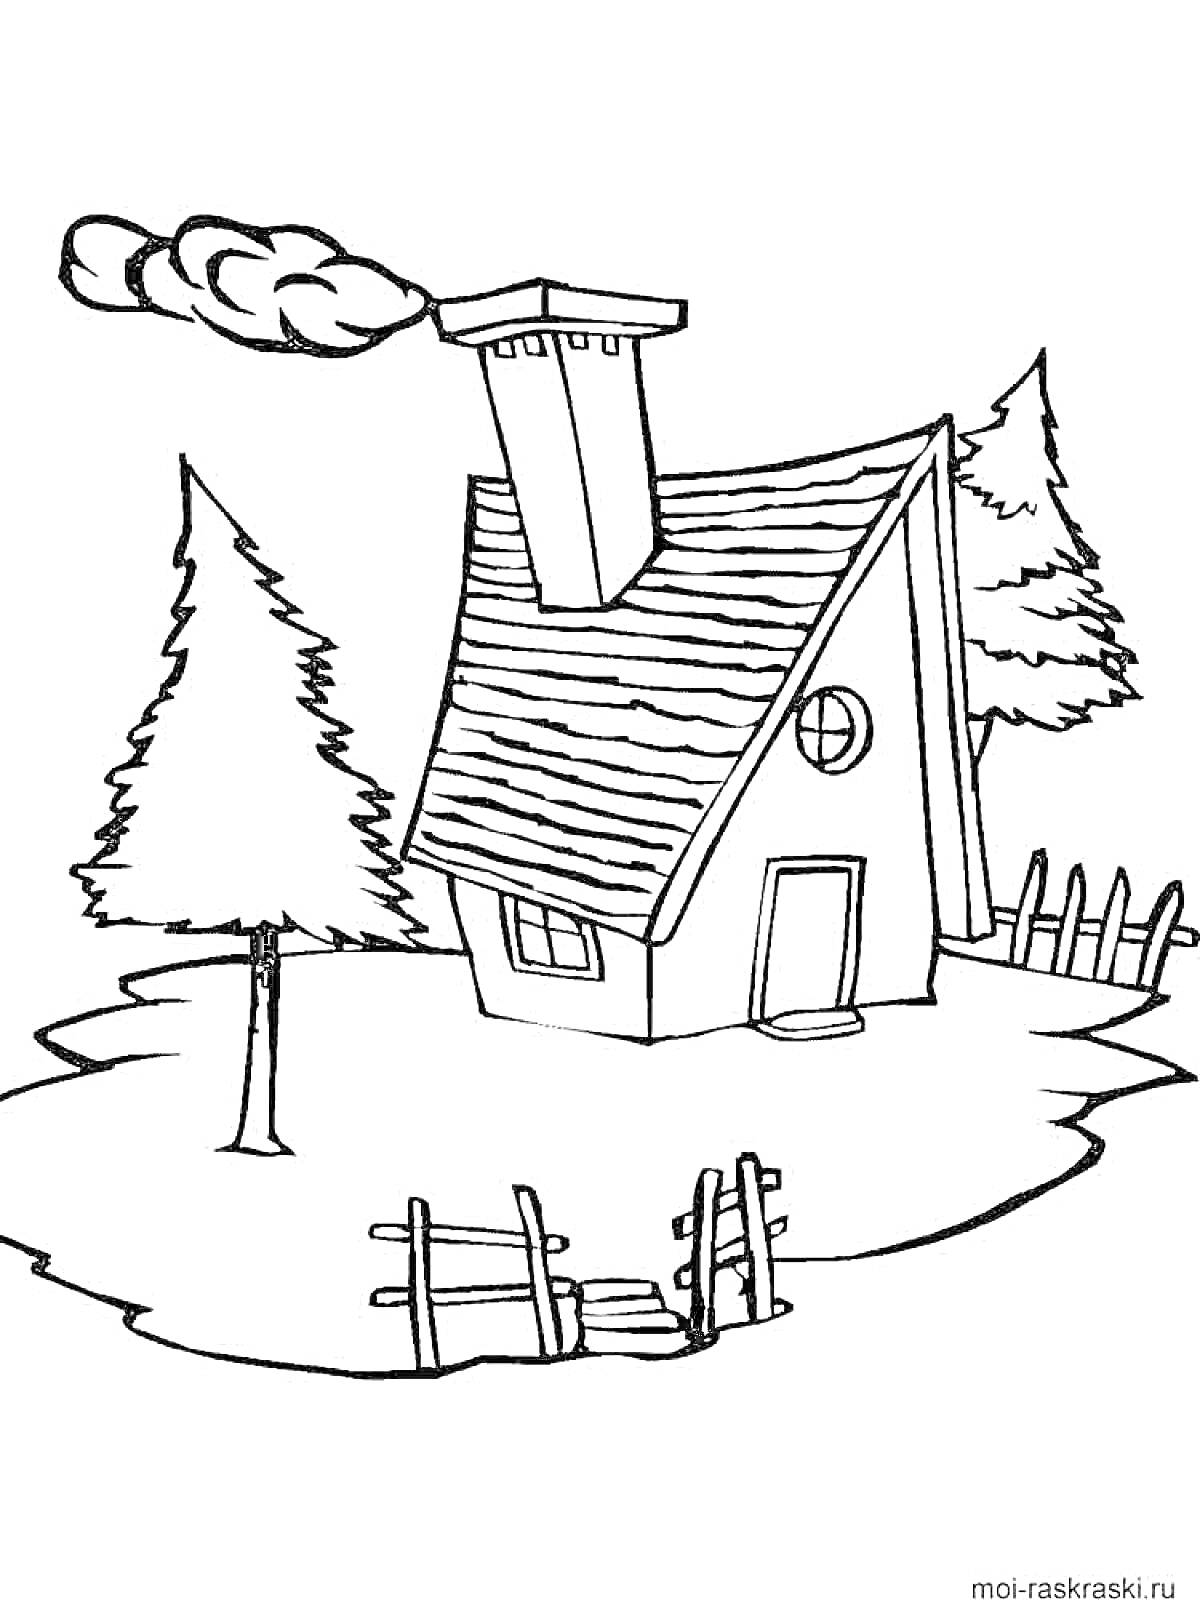 Раскраска Домик с дымоходом, забором и елками